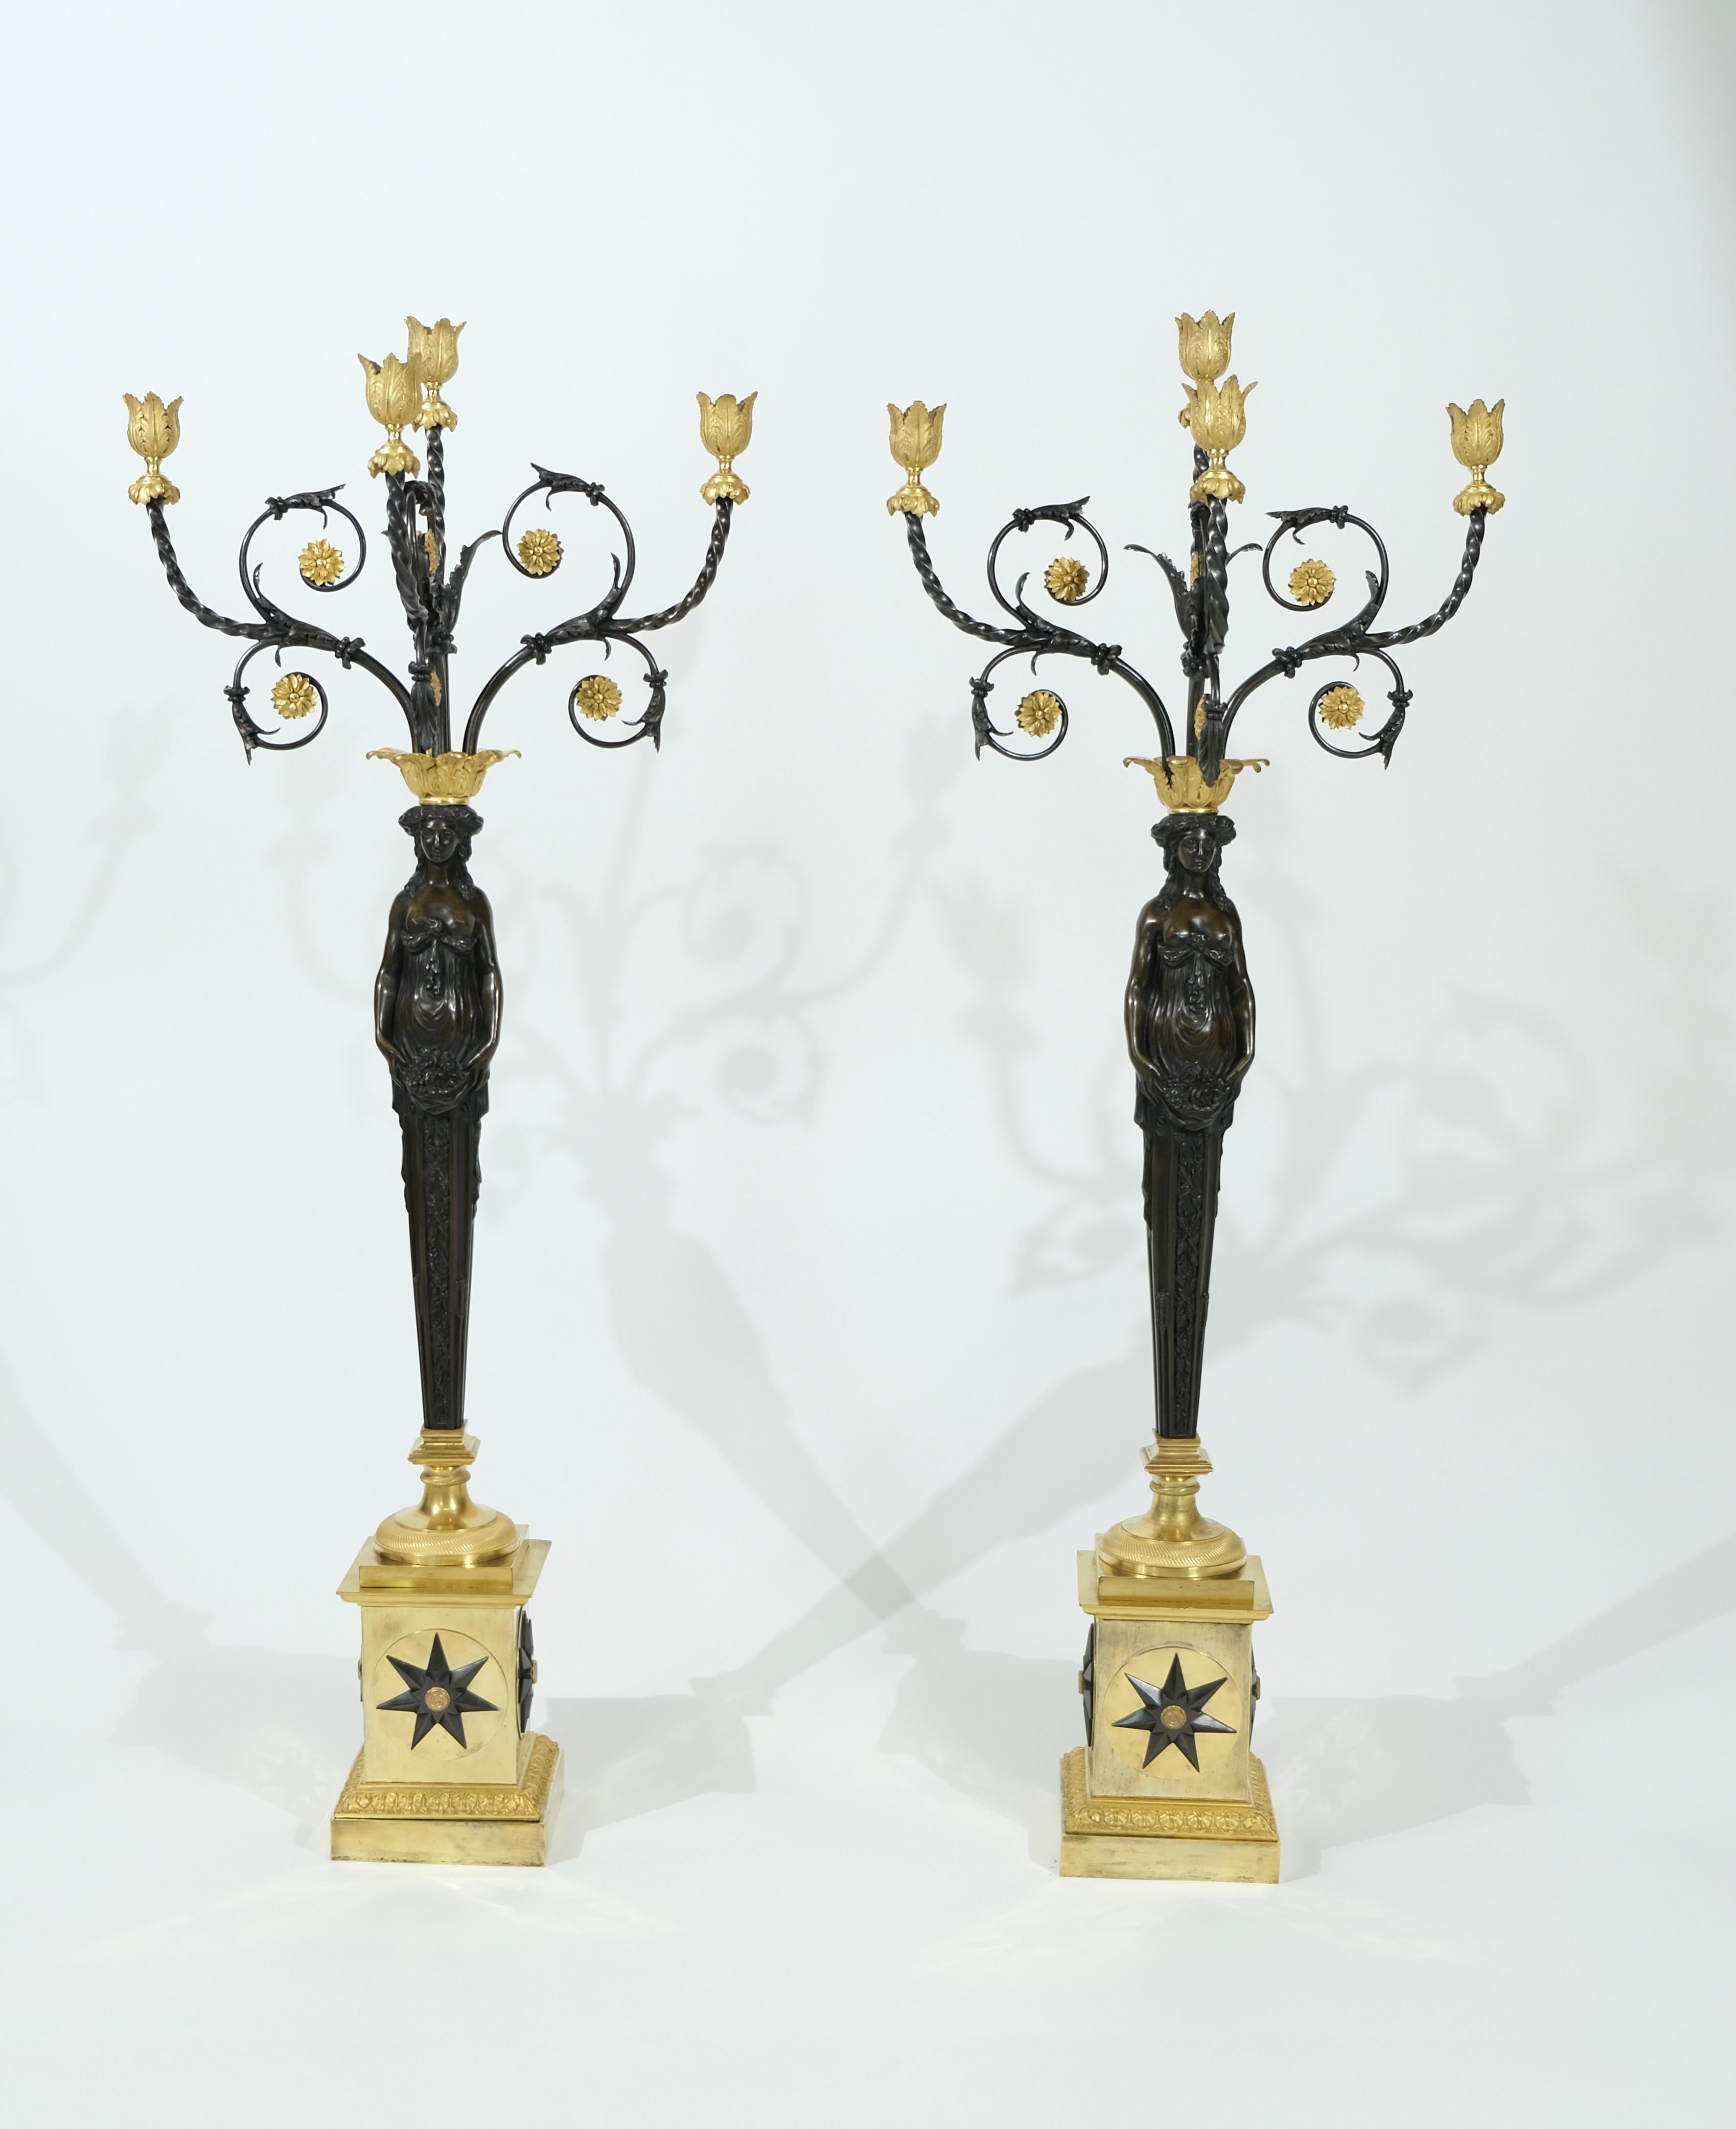 Ein Paar vergoldete und schwarz patinierte Bronzekandelaber, 99 cm hoch. Es handelt sich um ein ungewöhnliches Modell mit großen schwarzpatinierten Göttinnen, die vier Arme mit Kerzenhaltern auf dem Kopf halten. Die Qualität des Gusses ist sehr hoch